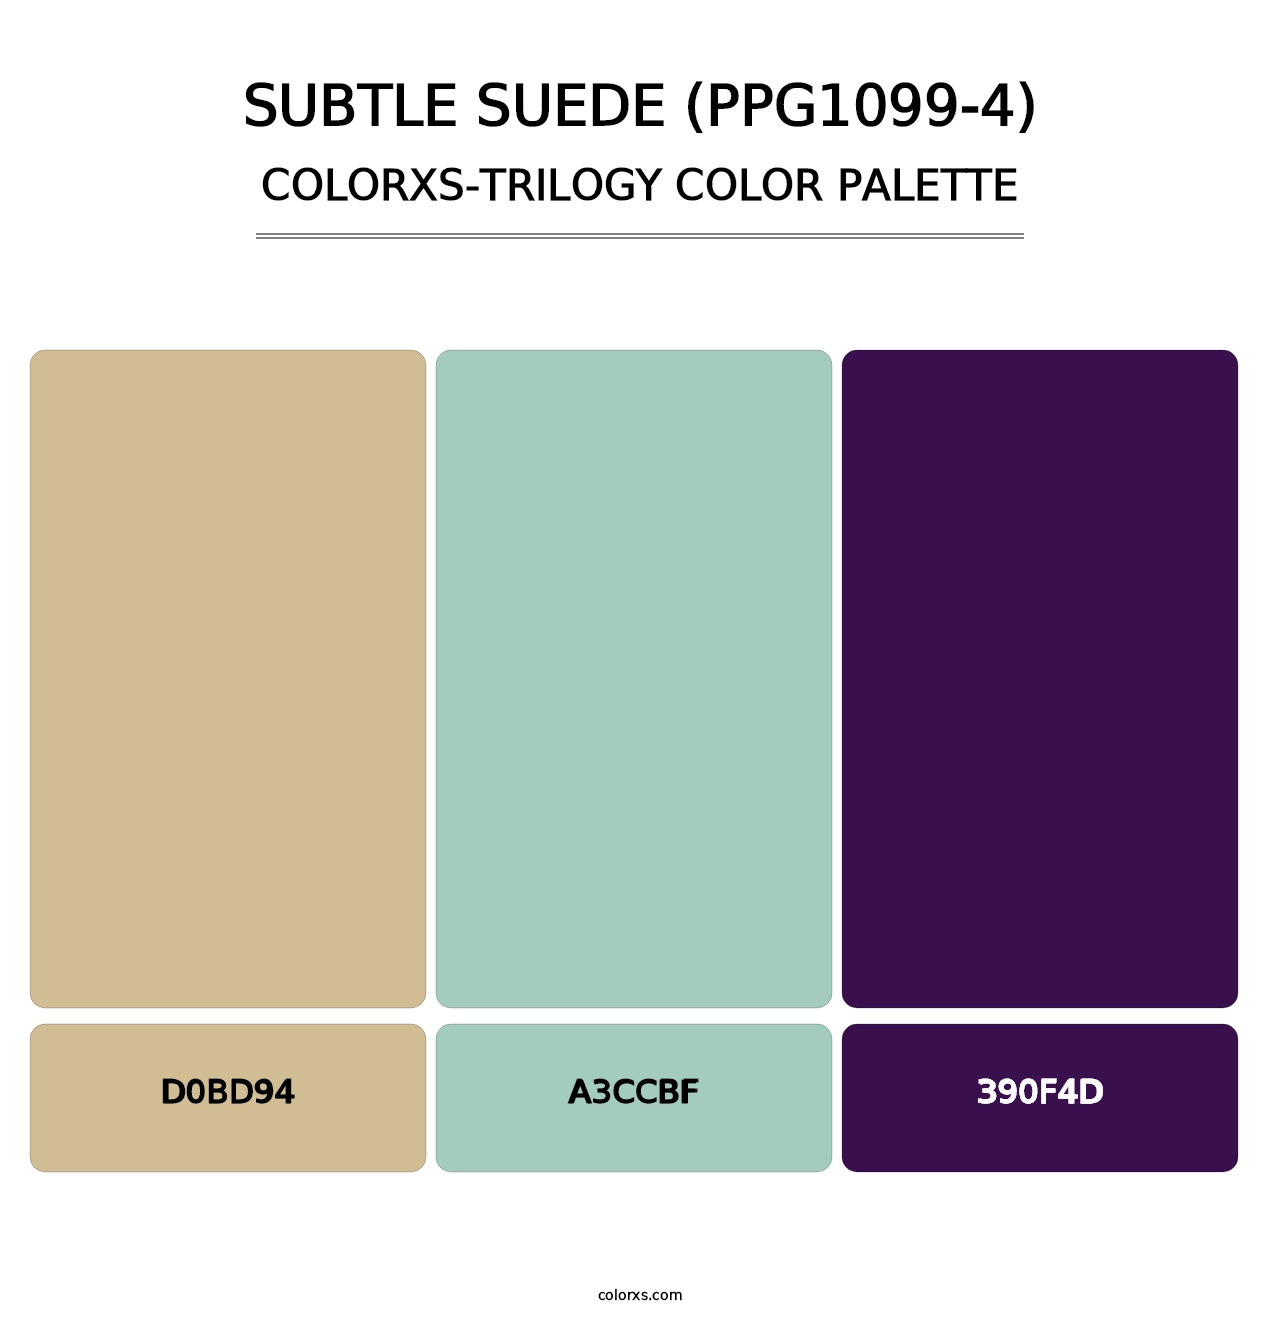 Subtle Suede (PPG1099-4) - Colorxs Trilogy Palette